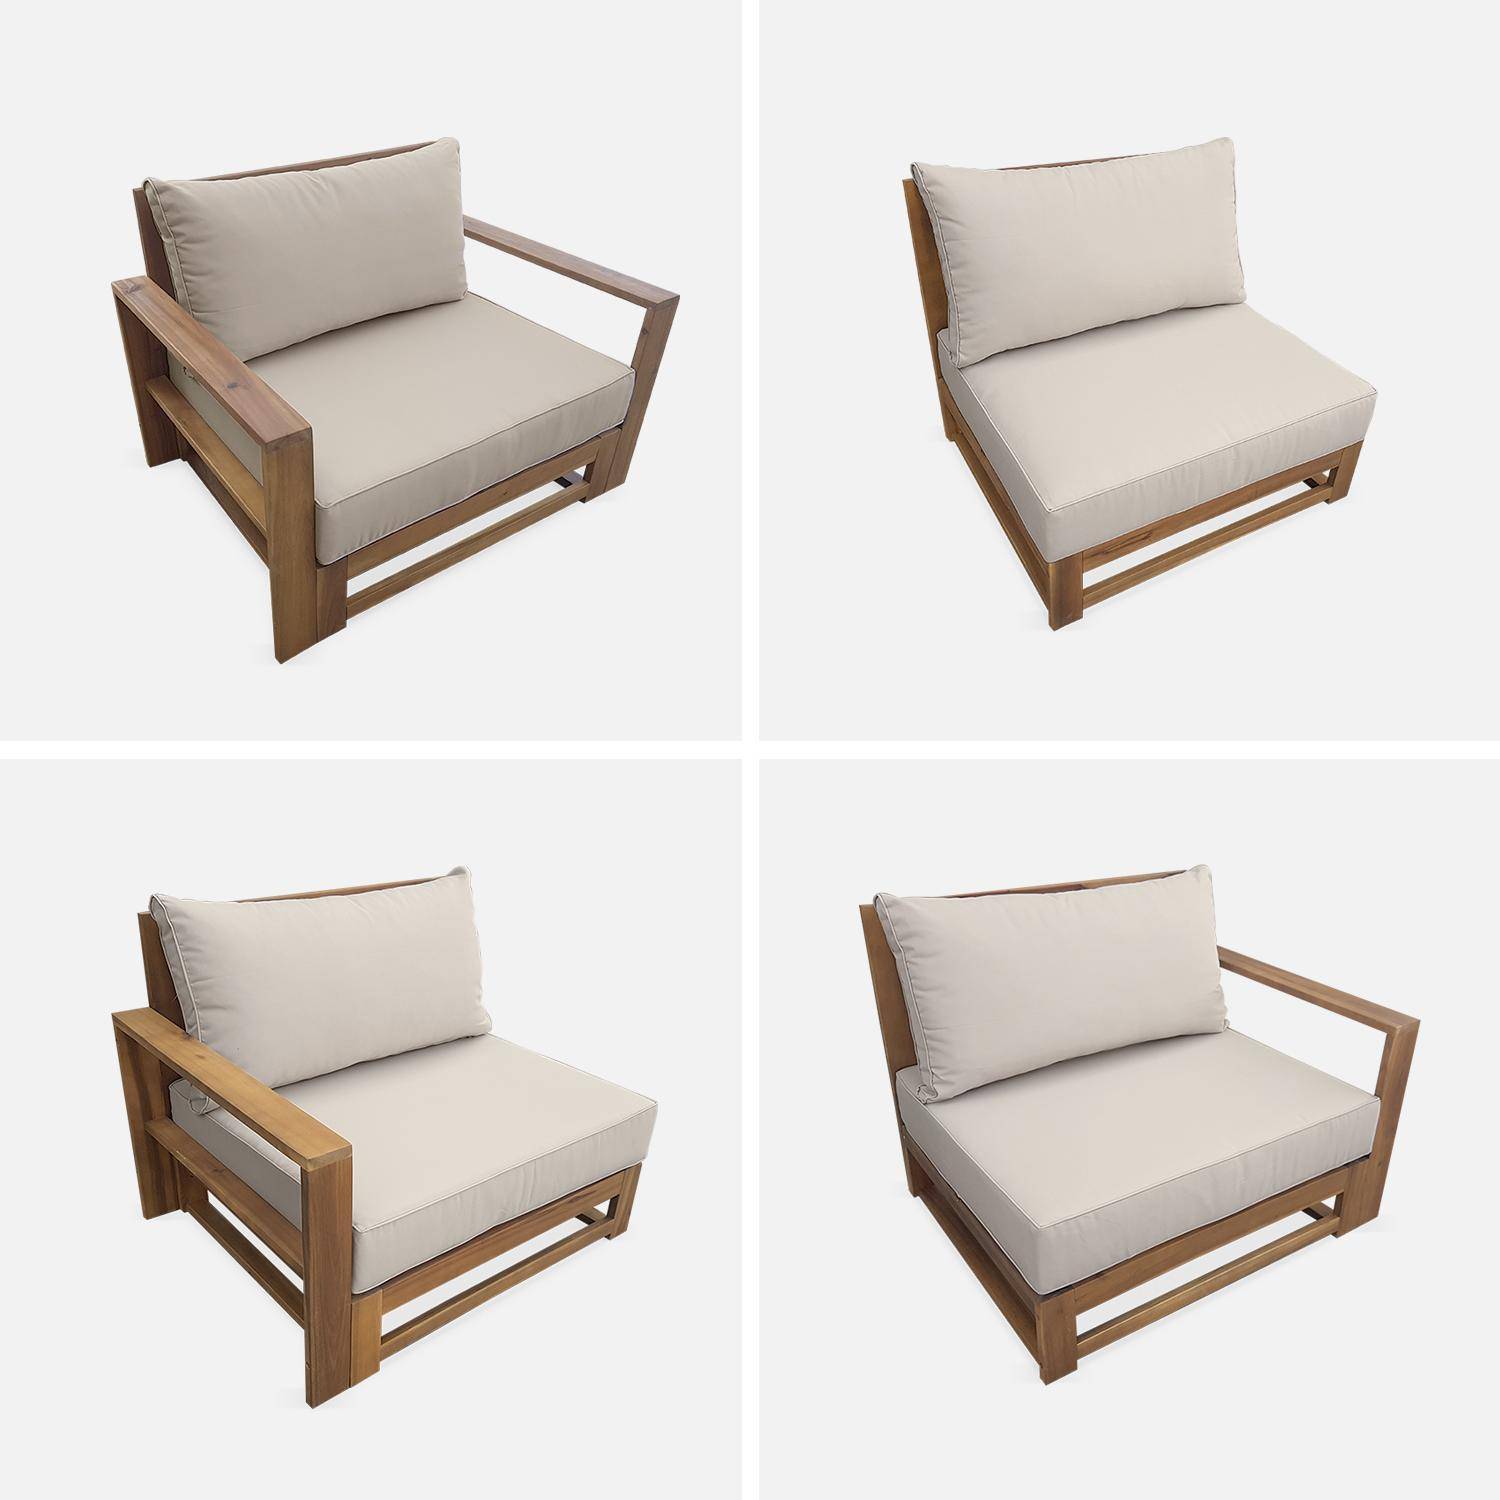 Salon de jardin en bois 5 places - Mendoza - Coussins beiges, canapé, fauteuils et table basse en acacia, 6 éléments modulables, design Photo7